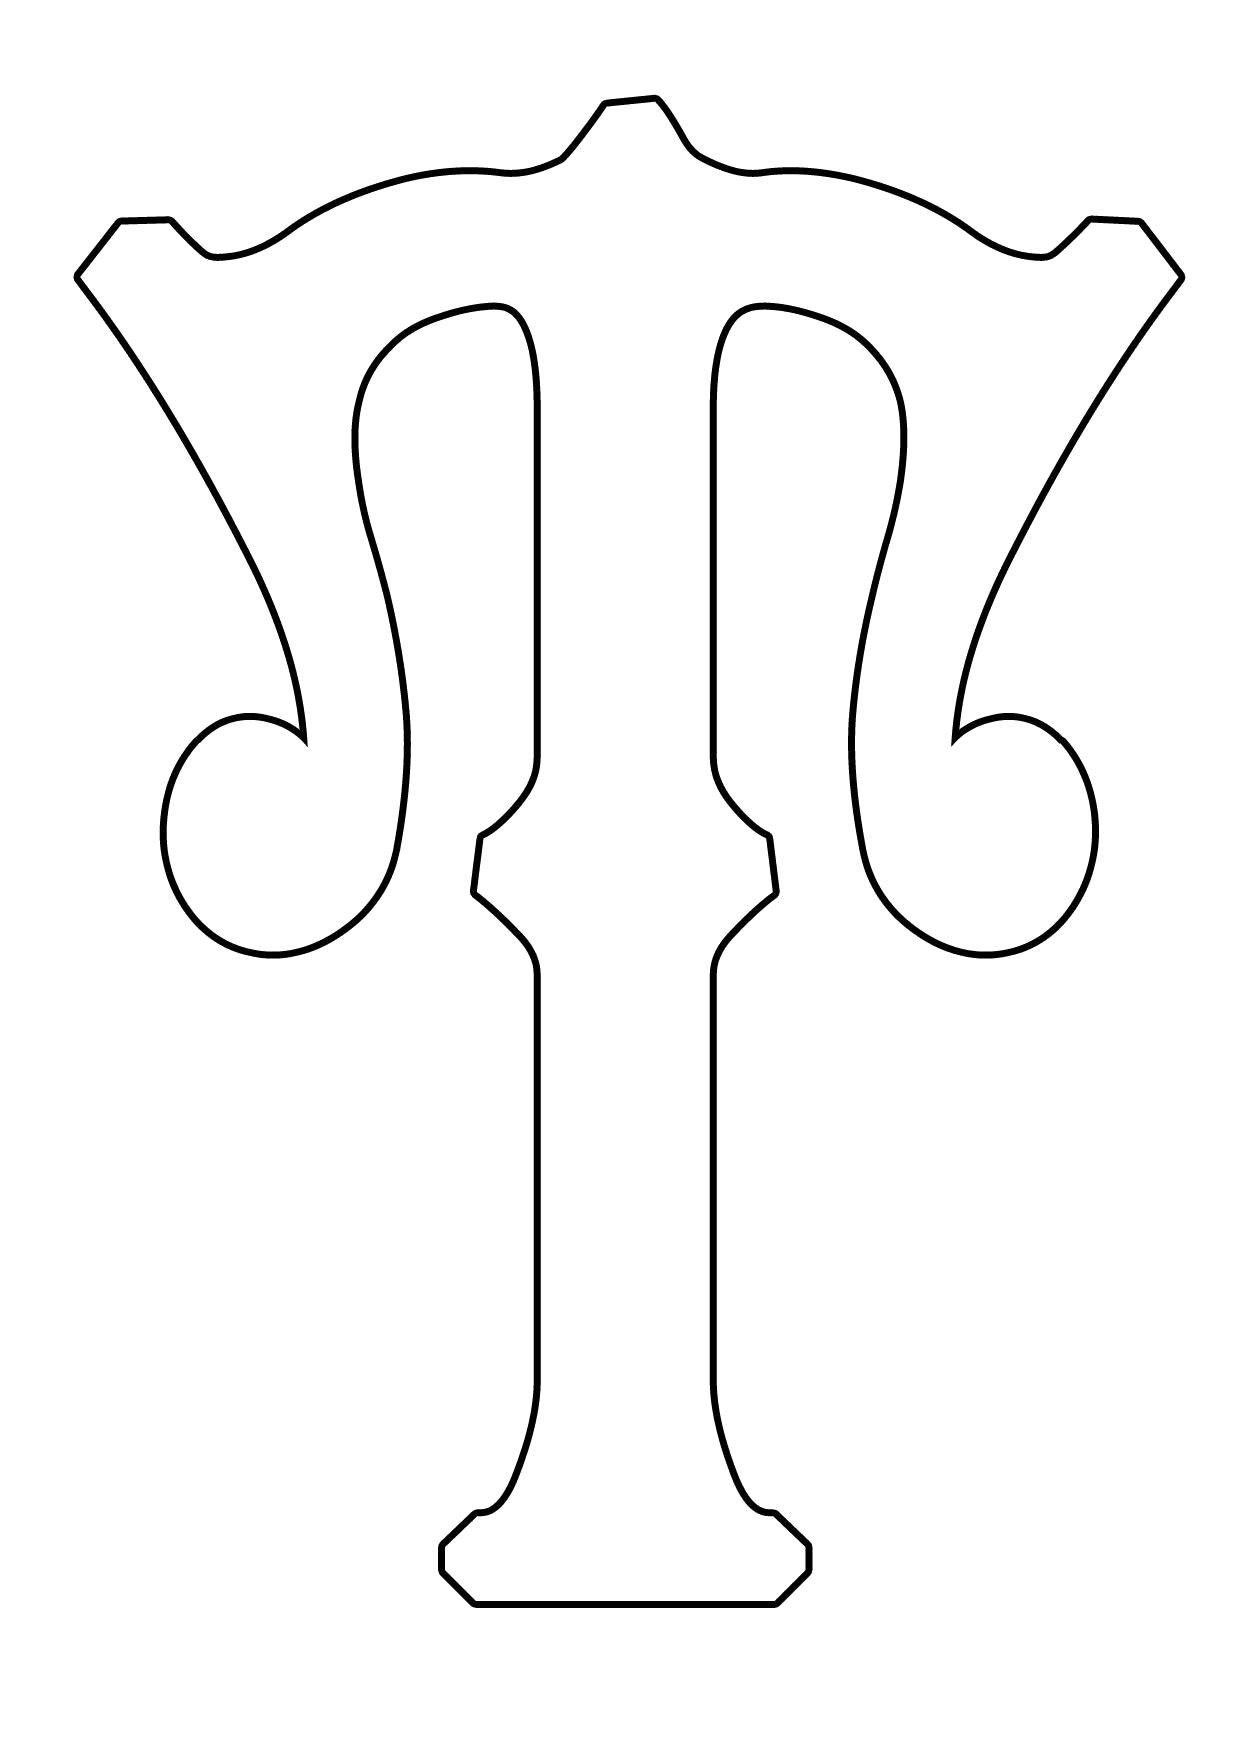 Раскраска Буква Т формата А4. Шаблон